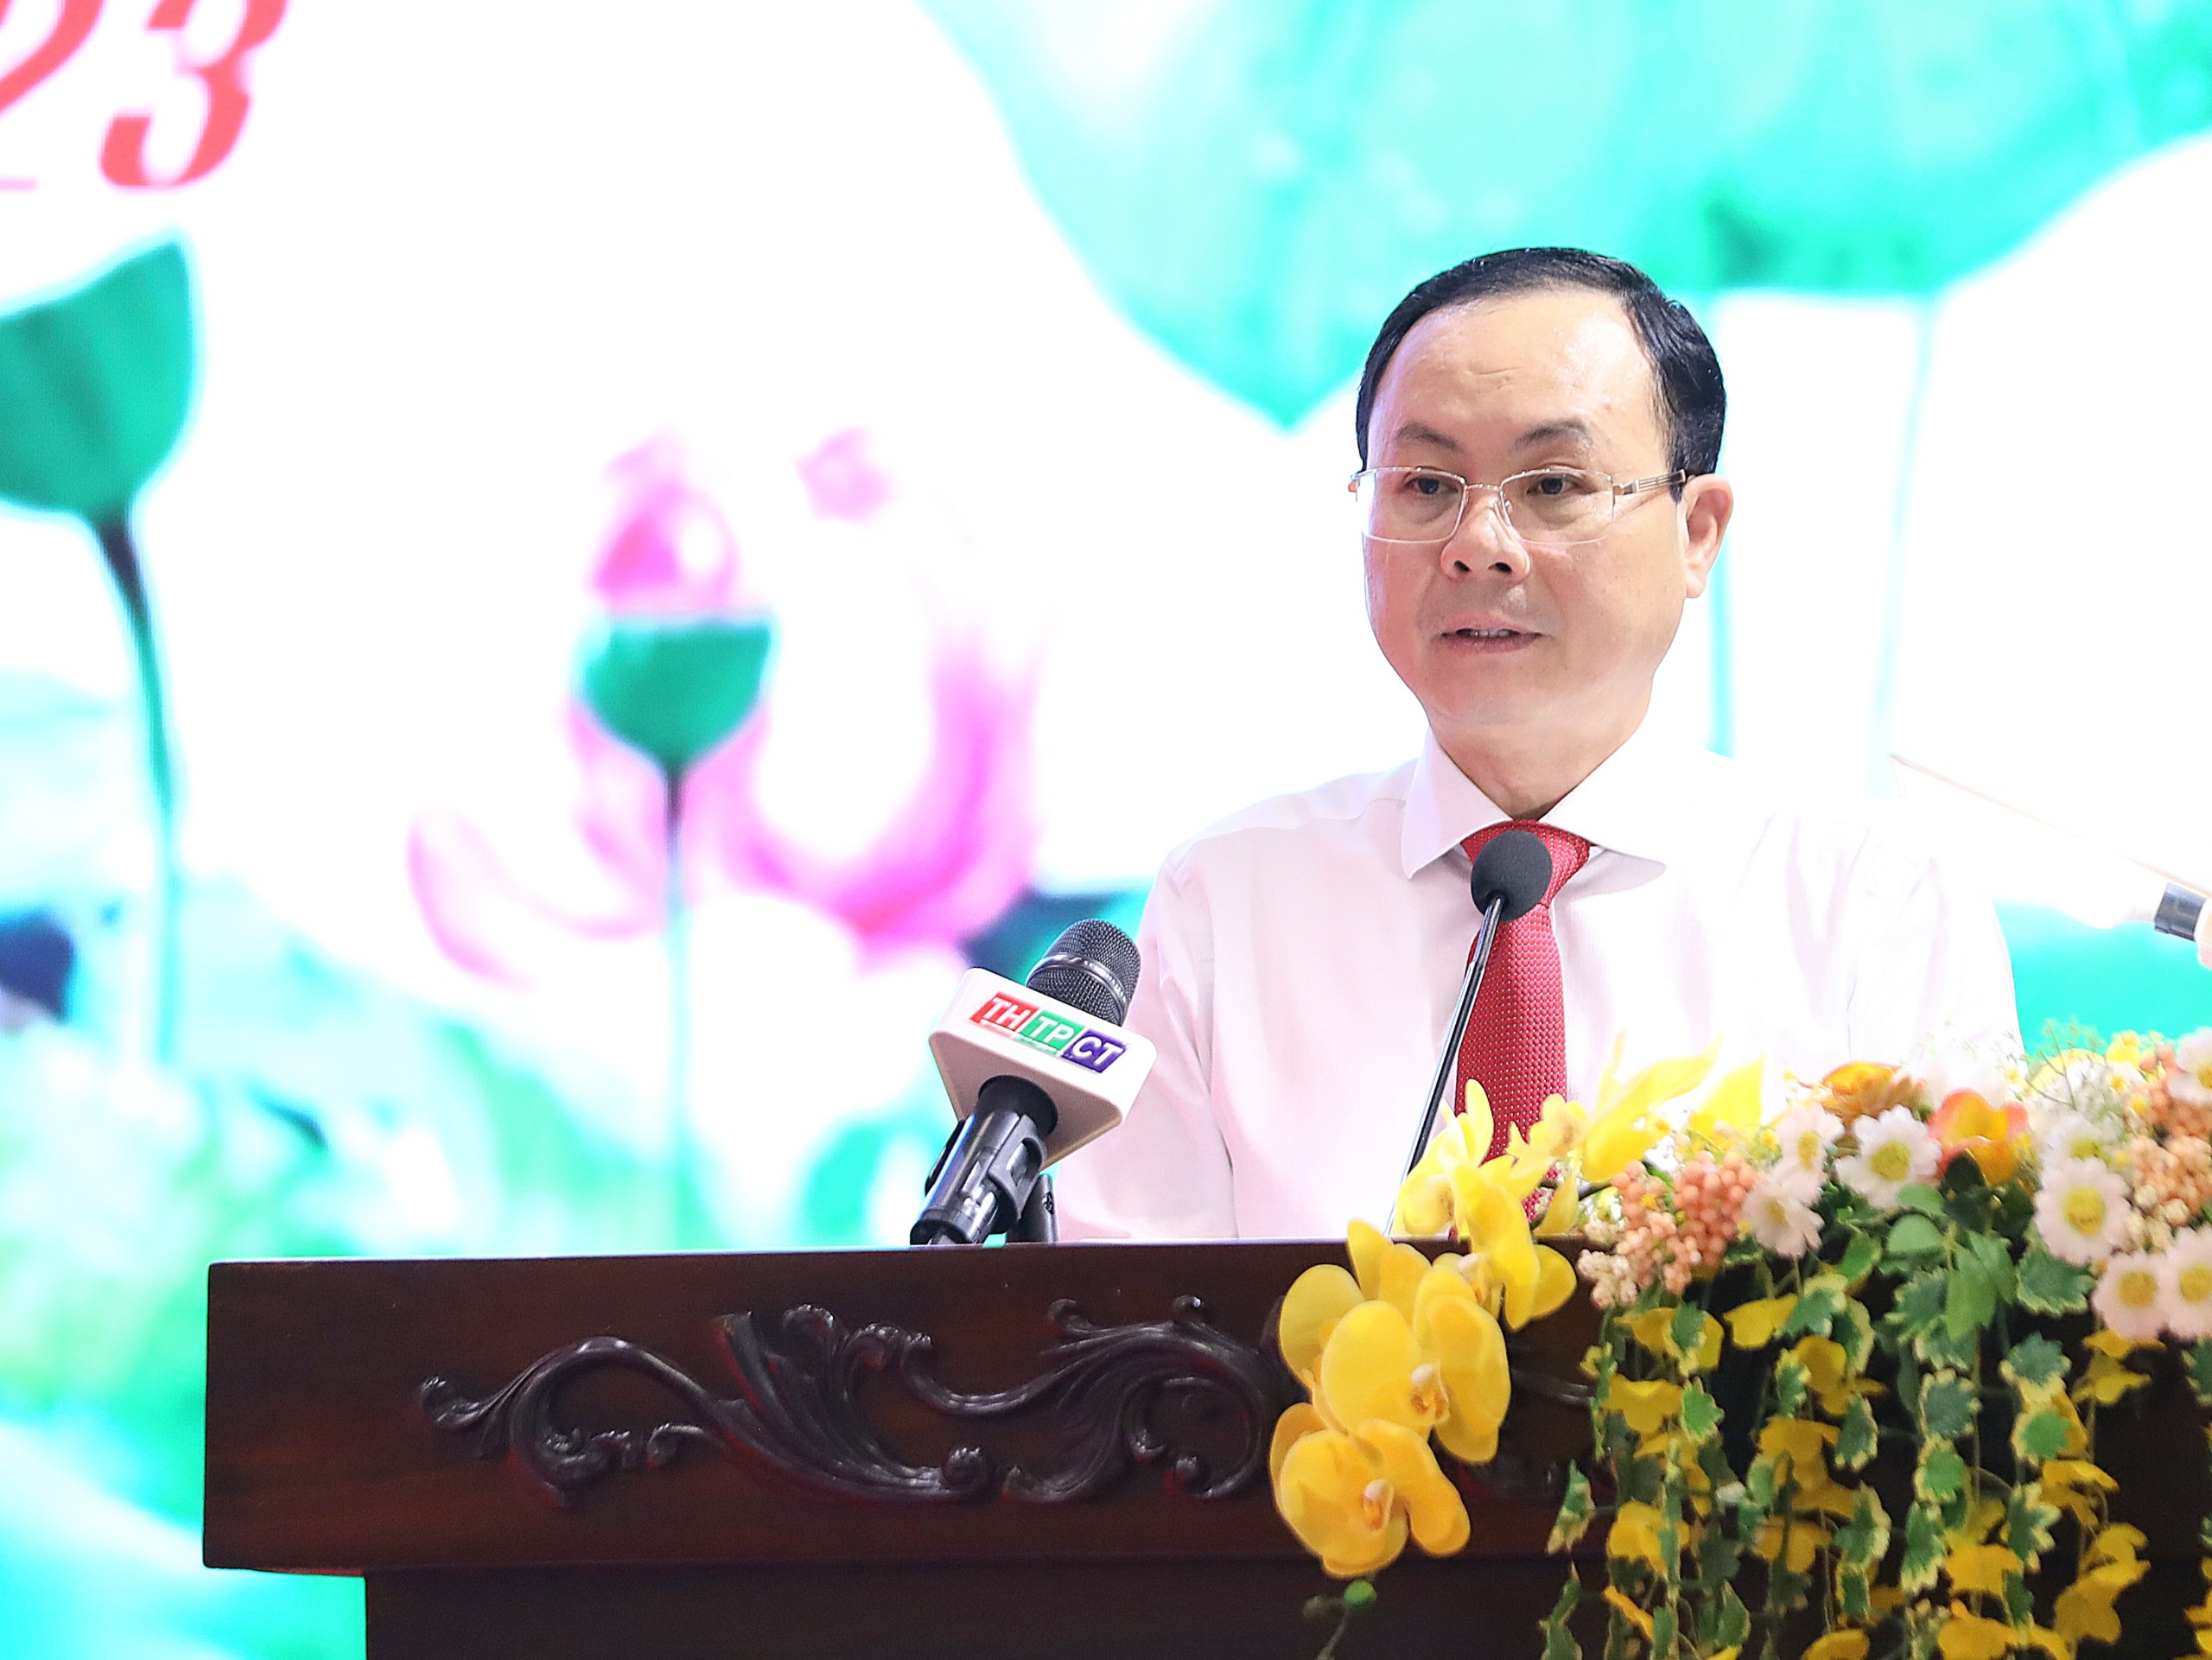 Ông Nguyễn Văn Hiếu - Ủy viên dự khuyết BCH Trung ương Đảng, Bí thư Thành ủy Cần Thơ phát biểu chào mừng tại buổi họp mặt.